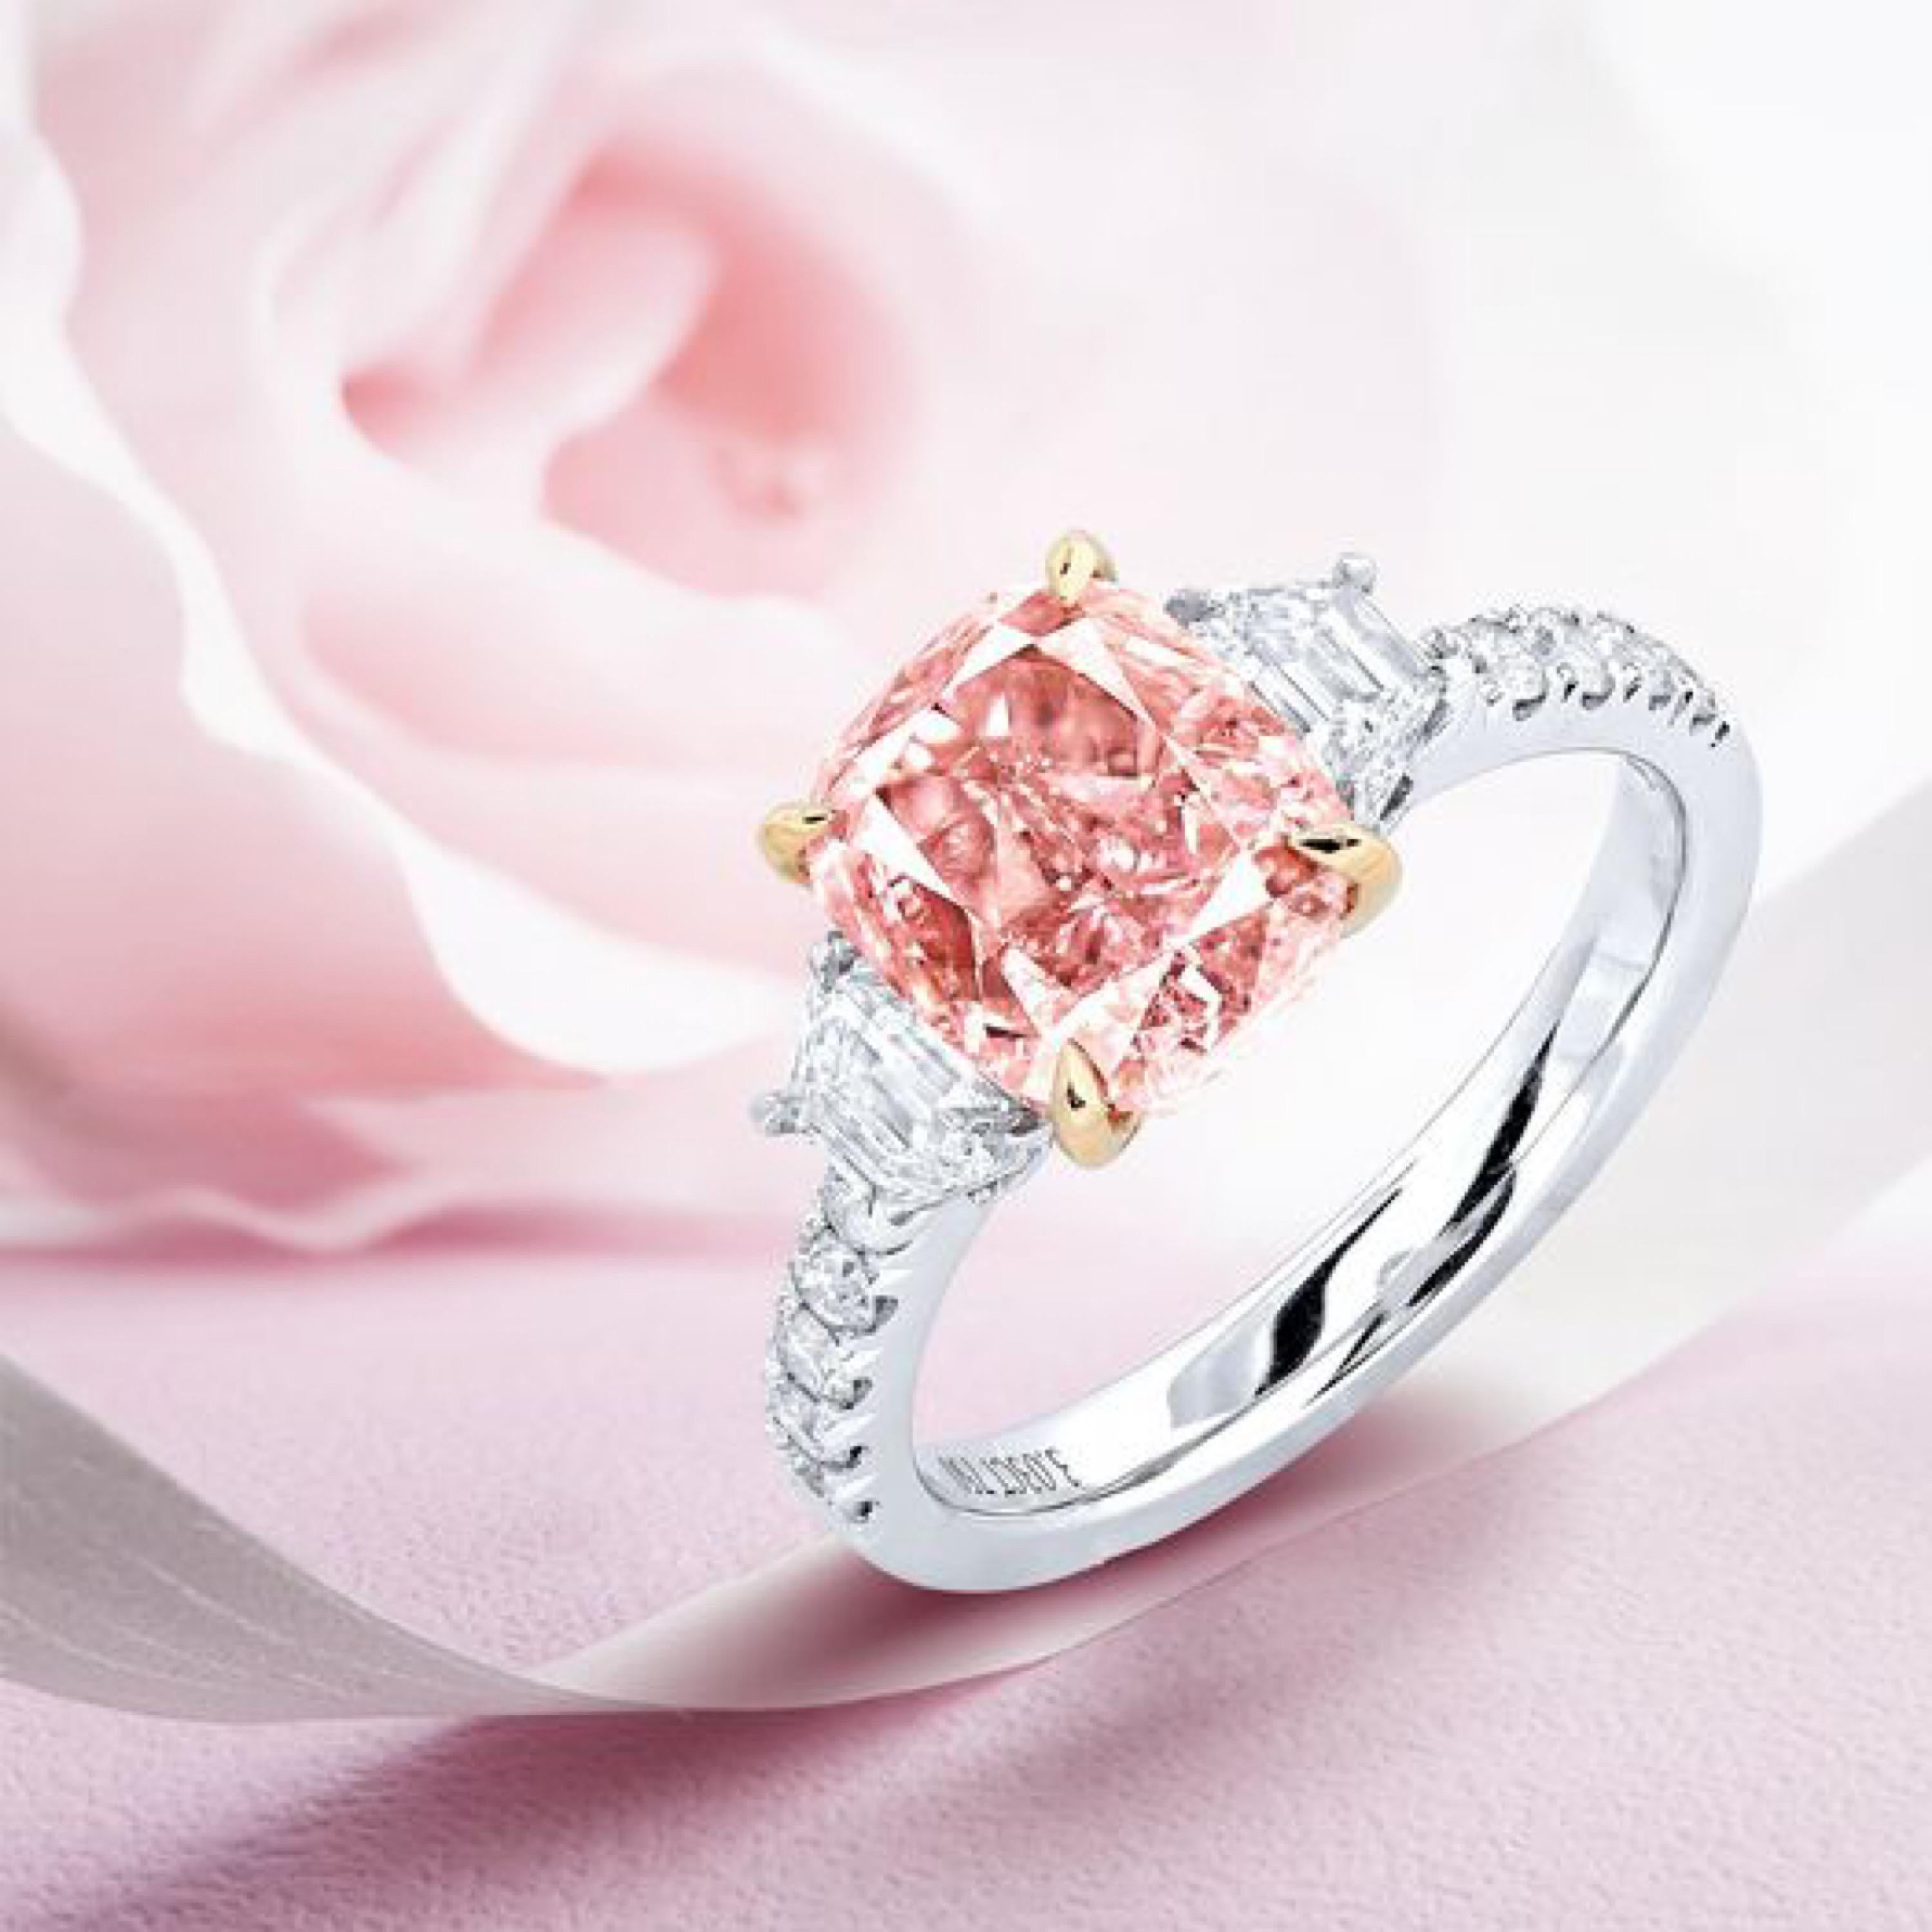 Aus dem Museumstresor von Emilio Jewelry, einem Händler in der berühmten New Yorker 5th Avenue,

mit einem natürlichen Gia-zertifizierten hellbraunen rosa Diamanten in der Mitte mit knapp über 3,00 Karat
fassung: 2 weiße Diamanten von insgesamt etwa